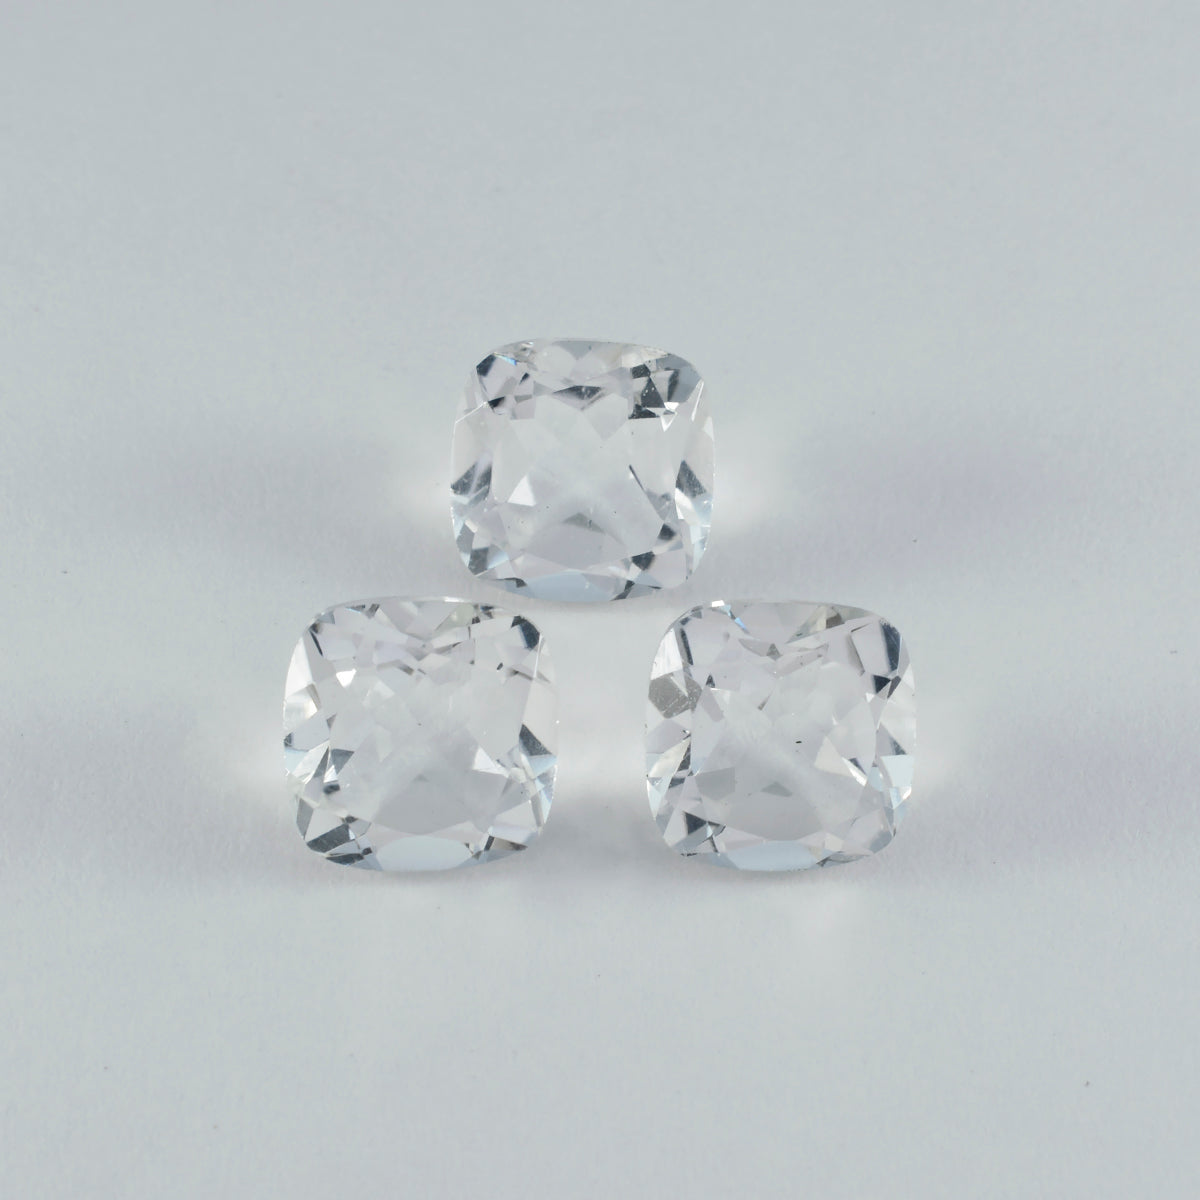 riyogems 1 шт., белый кристалл кварца, граненый, 10х10 мм, в форме подушки, красивый качественный свободный камень